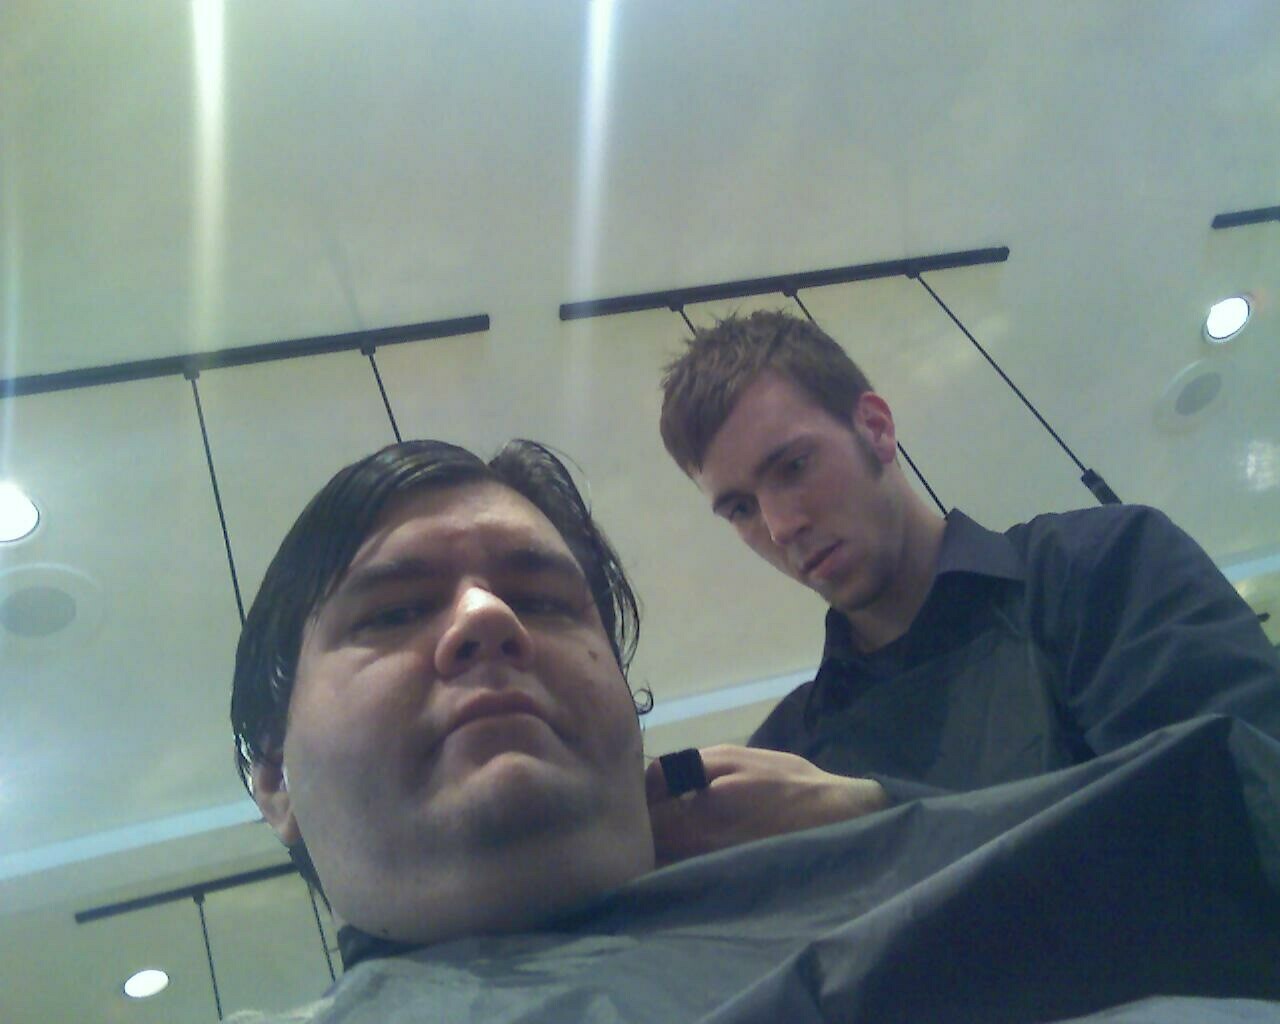 a man with a beard getting his hair cut